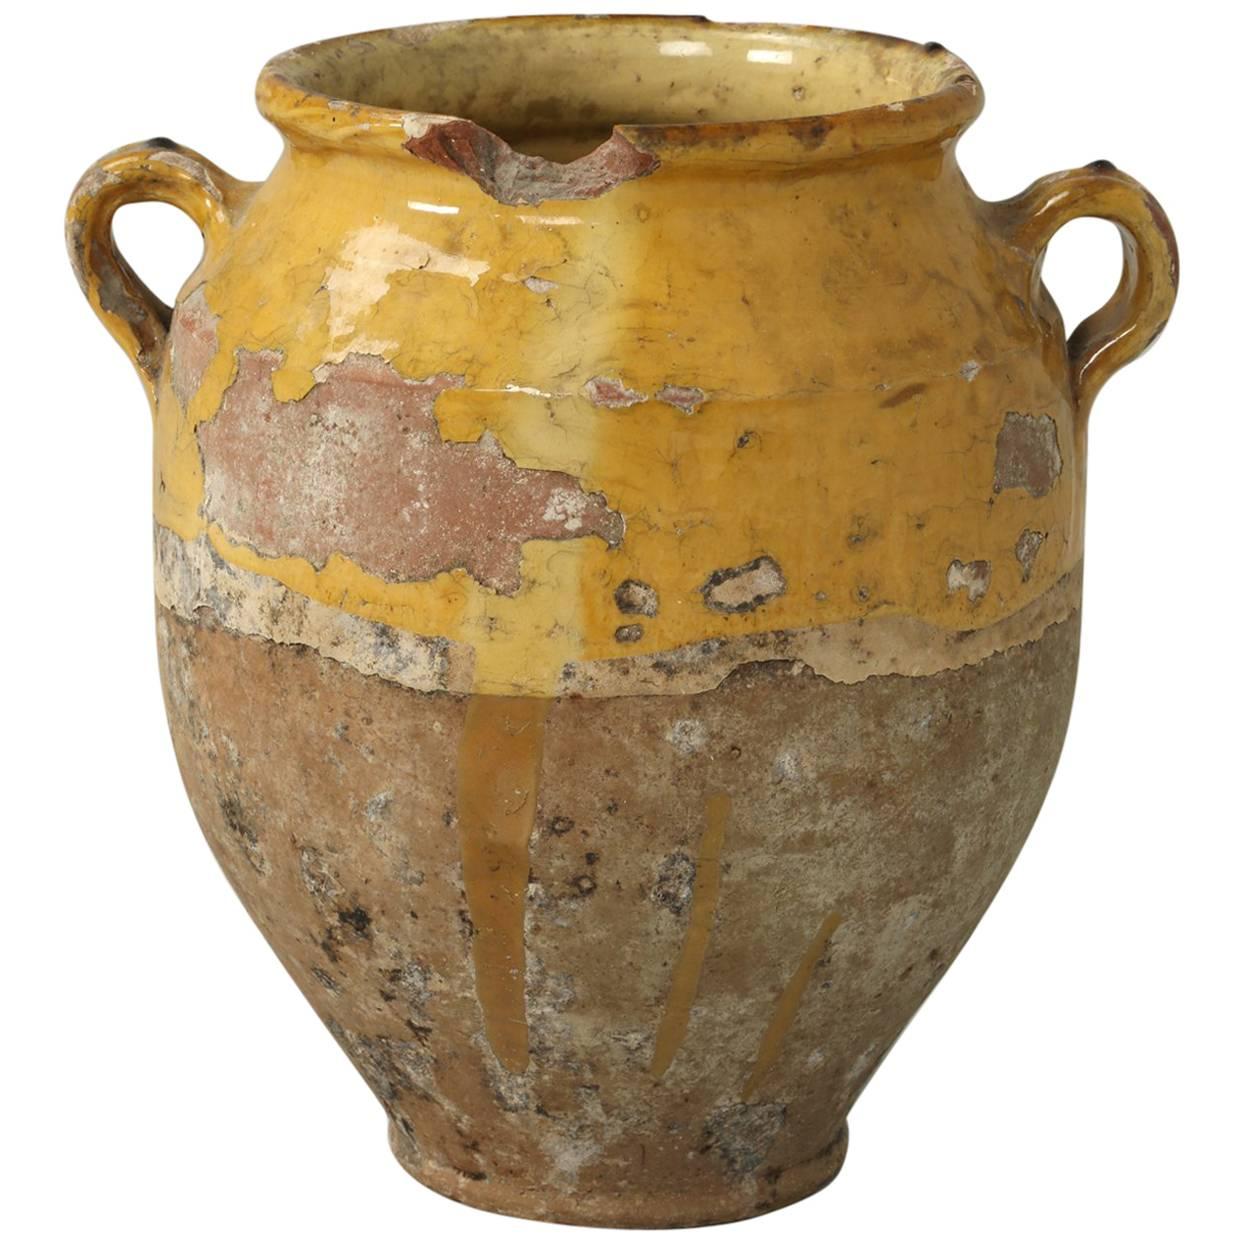 Antique French Confit Pot